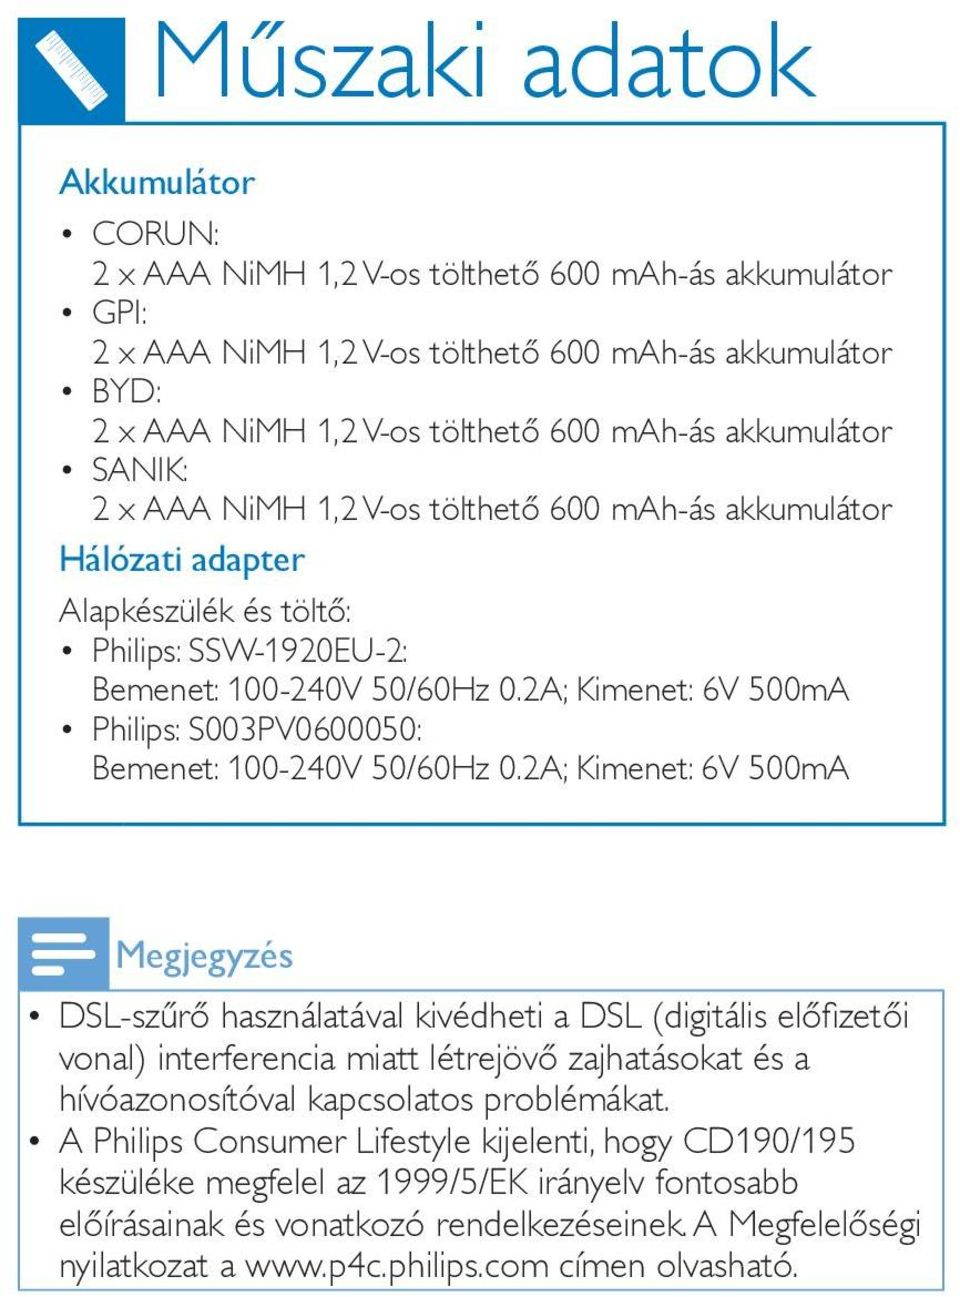 2A; Kimenet: 6V 500mA Megjegyzés DSL-szűrő használatával kivédheti a DSL (digitális előfizetői vonal) interferencia miatt létrejövő zajhatásokat és a